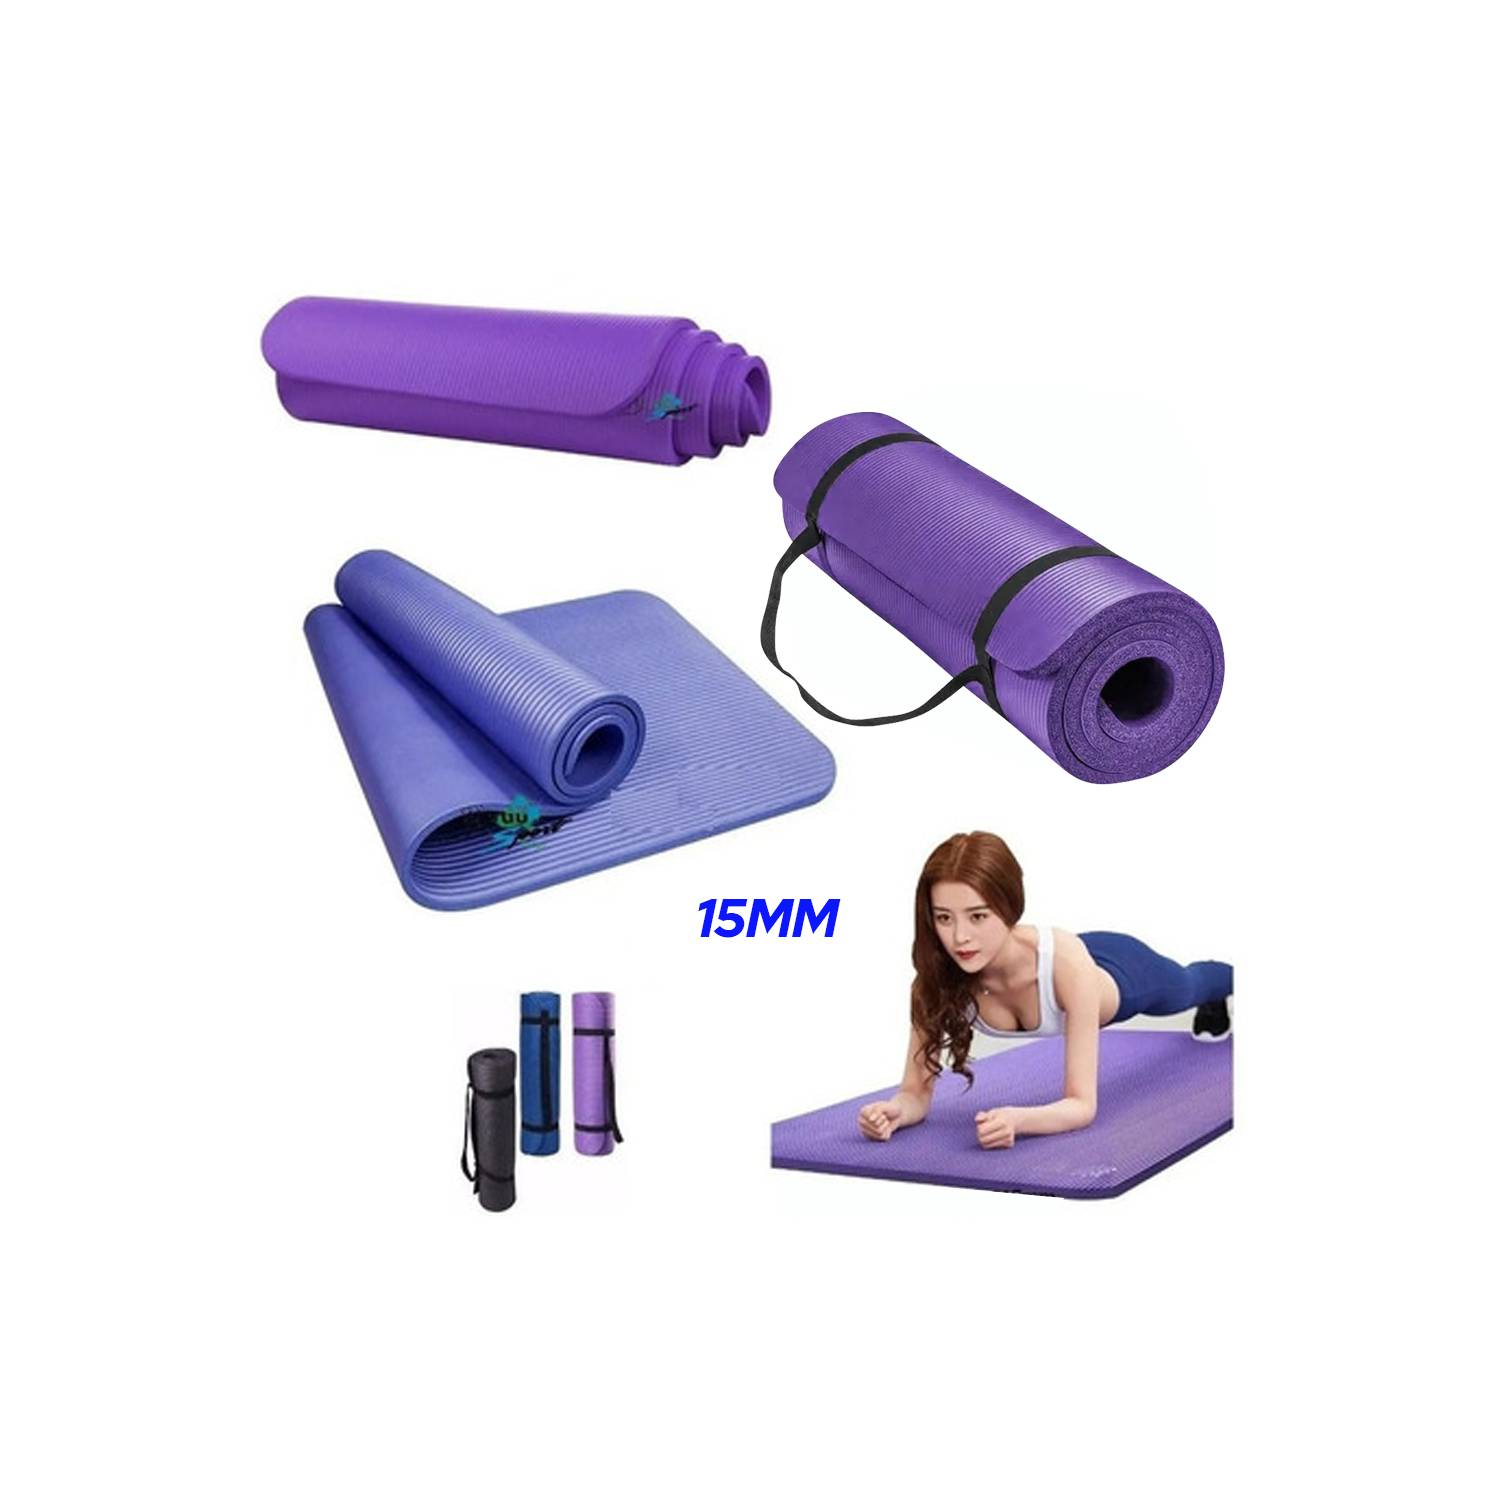 Colchoneta pilates/yoga softee deluxe 6 mm. - Material escolar, oficina y  nuevas tecnologias